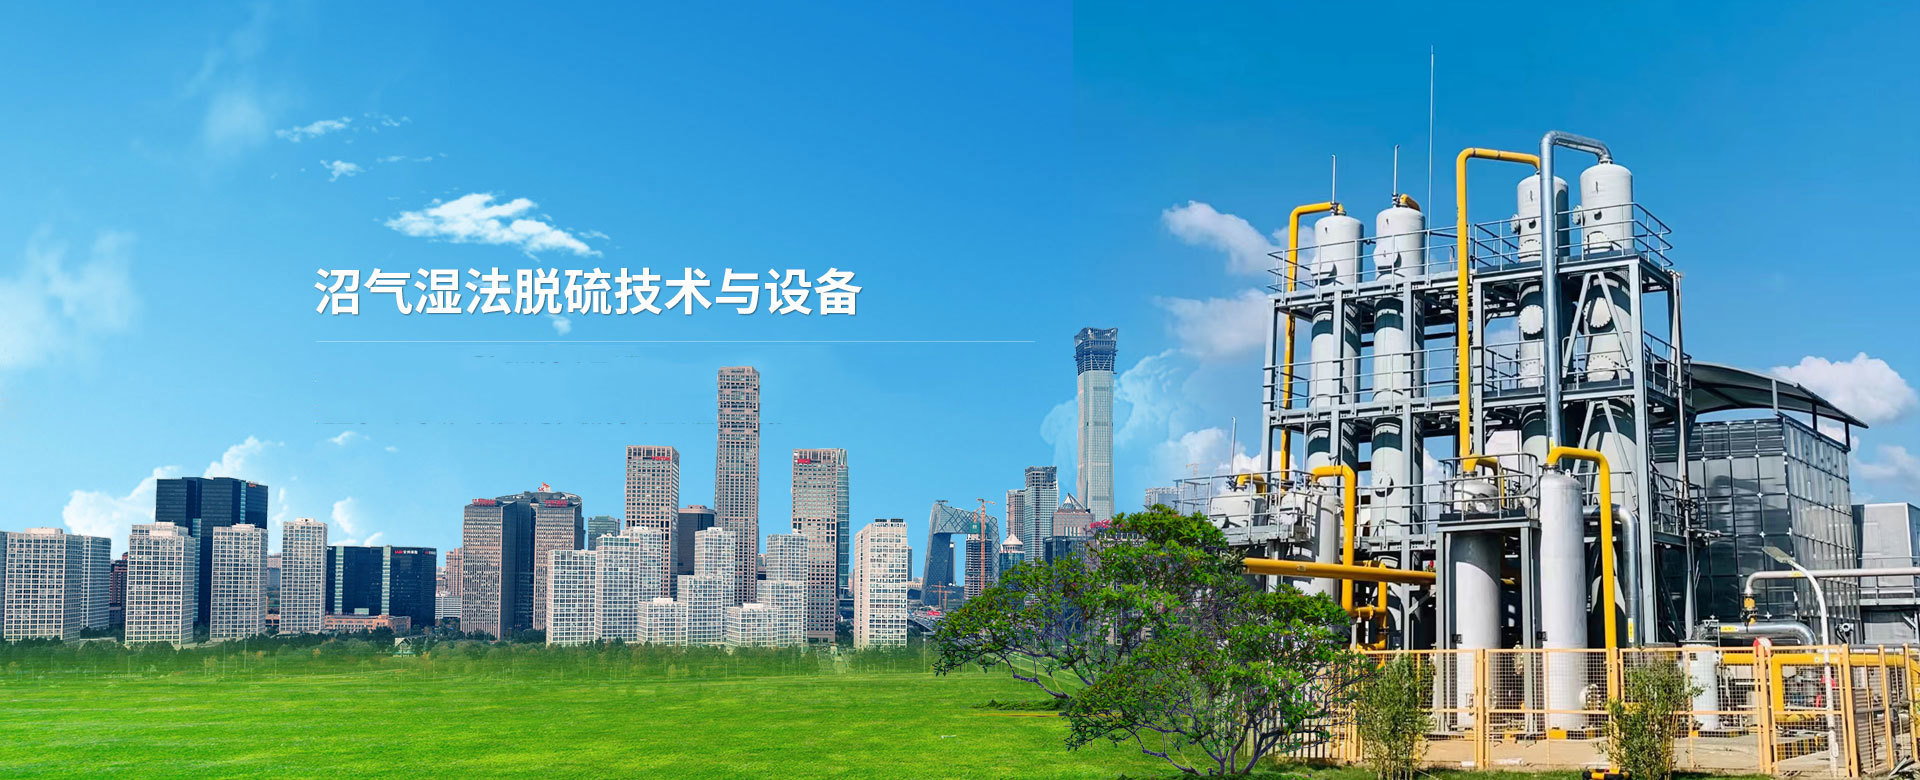 北京潔綠新源環境工程有限公司主要做沼氣濕法脫硫設備、生物除臭設備和納米曝氣設備